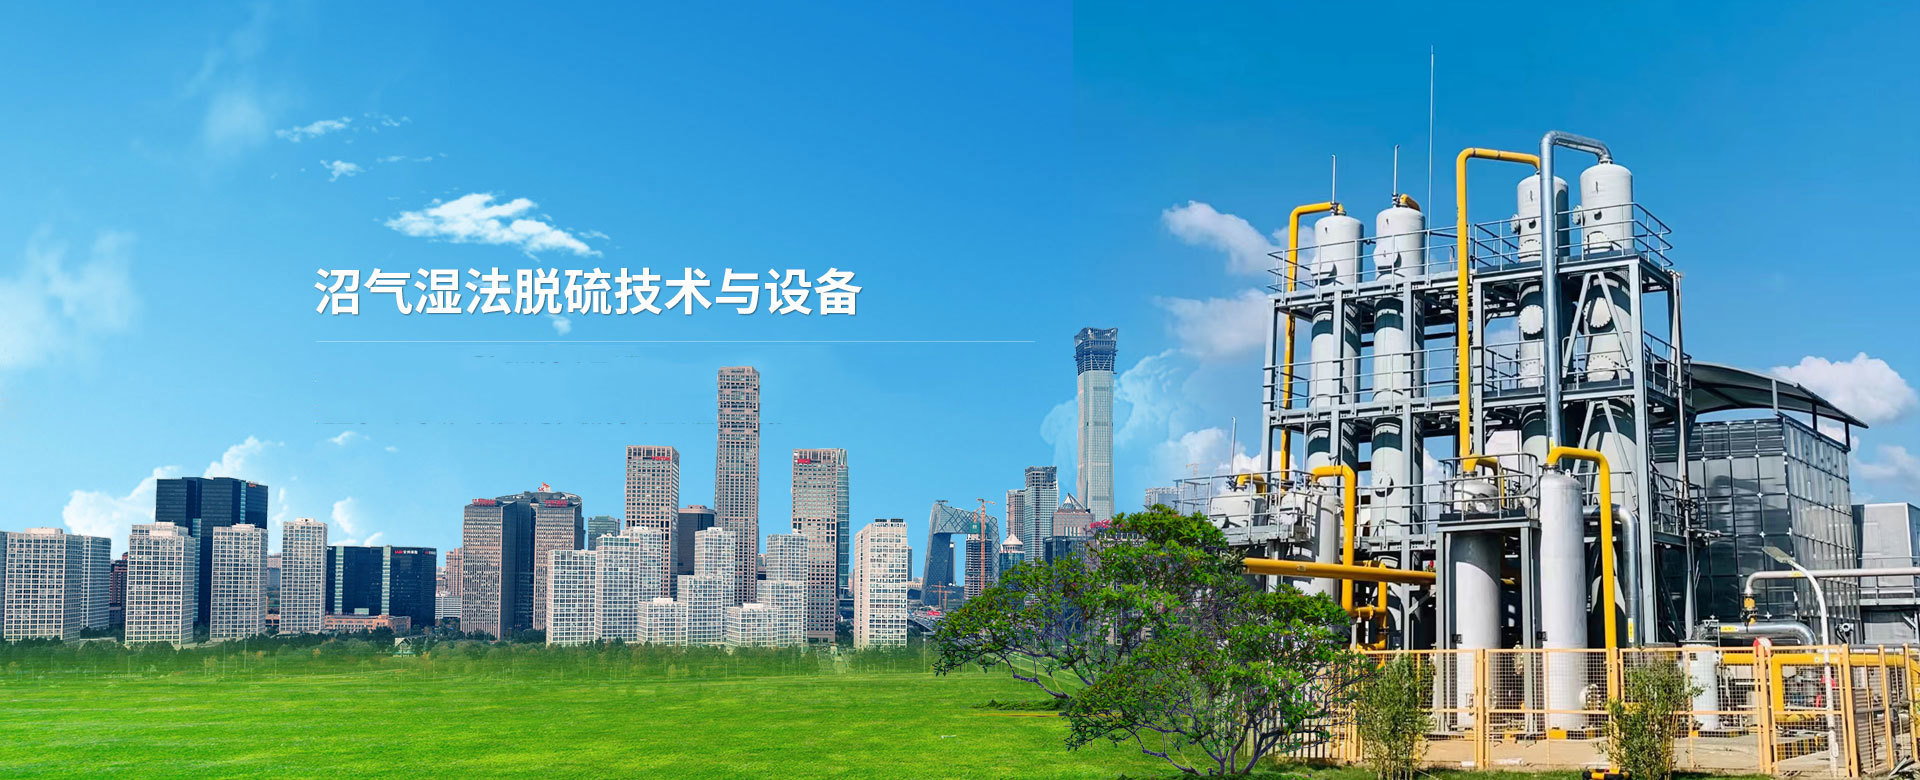 北京潔綠新源環境工程有限公司主要做沼氣濕法脫硫設備、生物除臭設備和納米曝氣設備